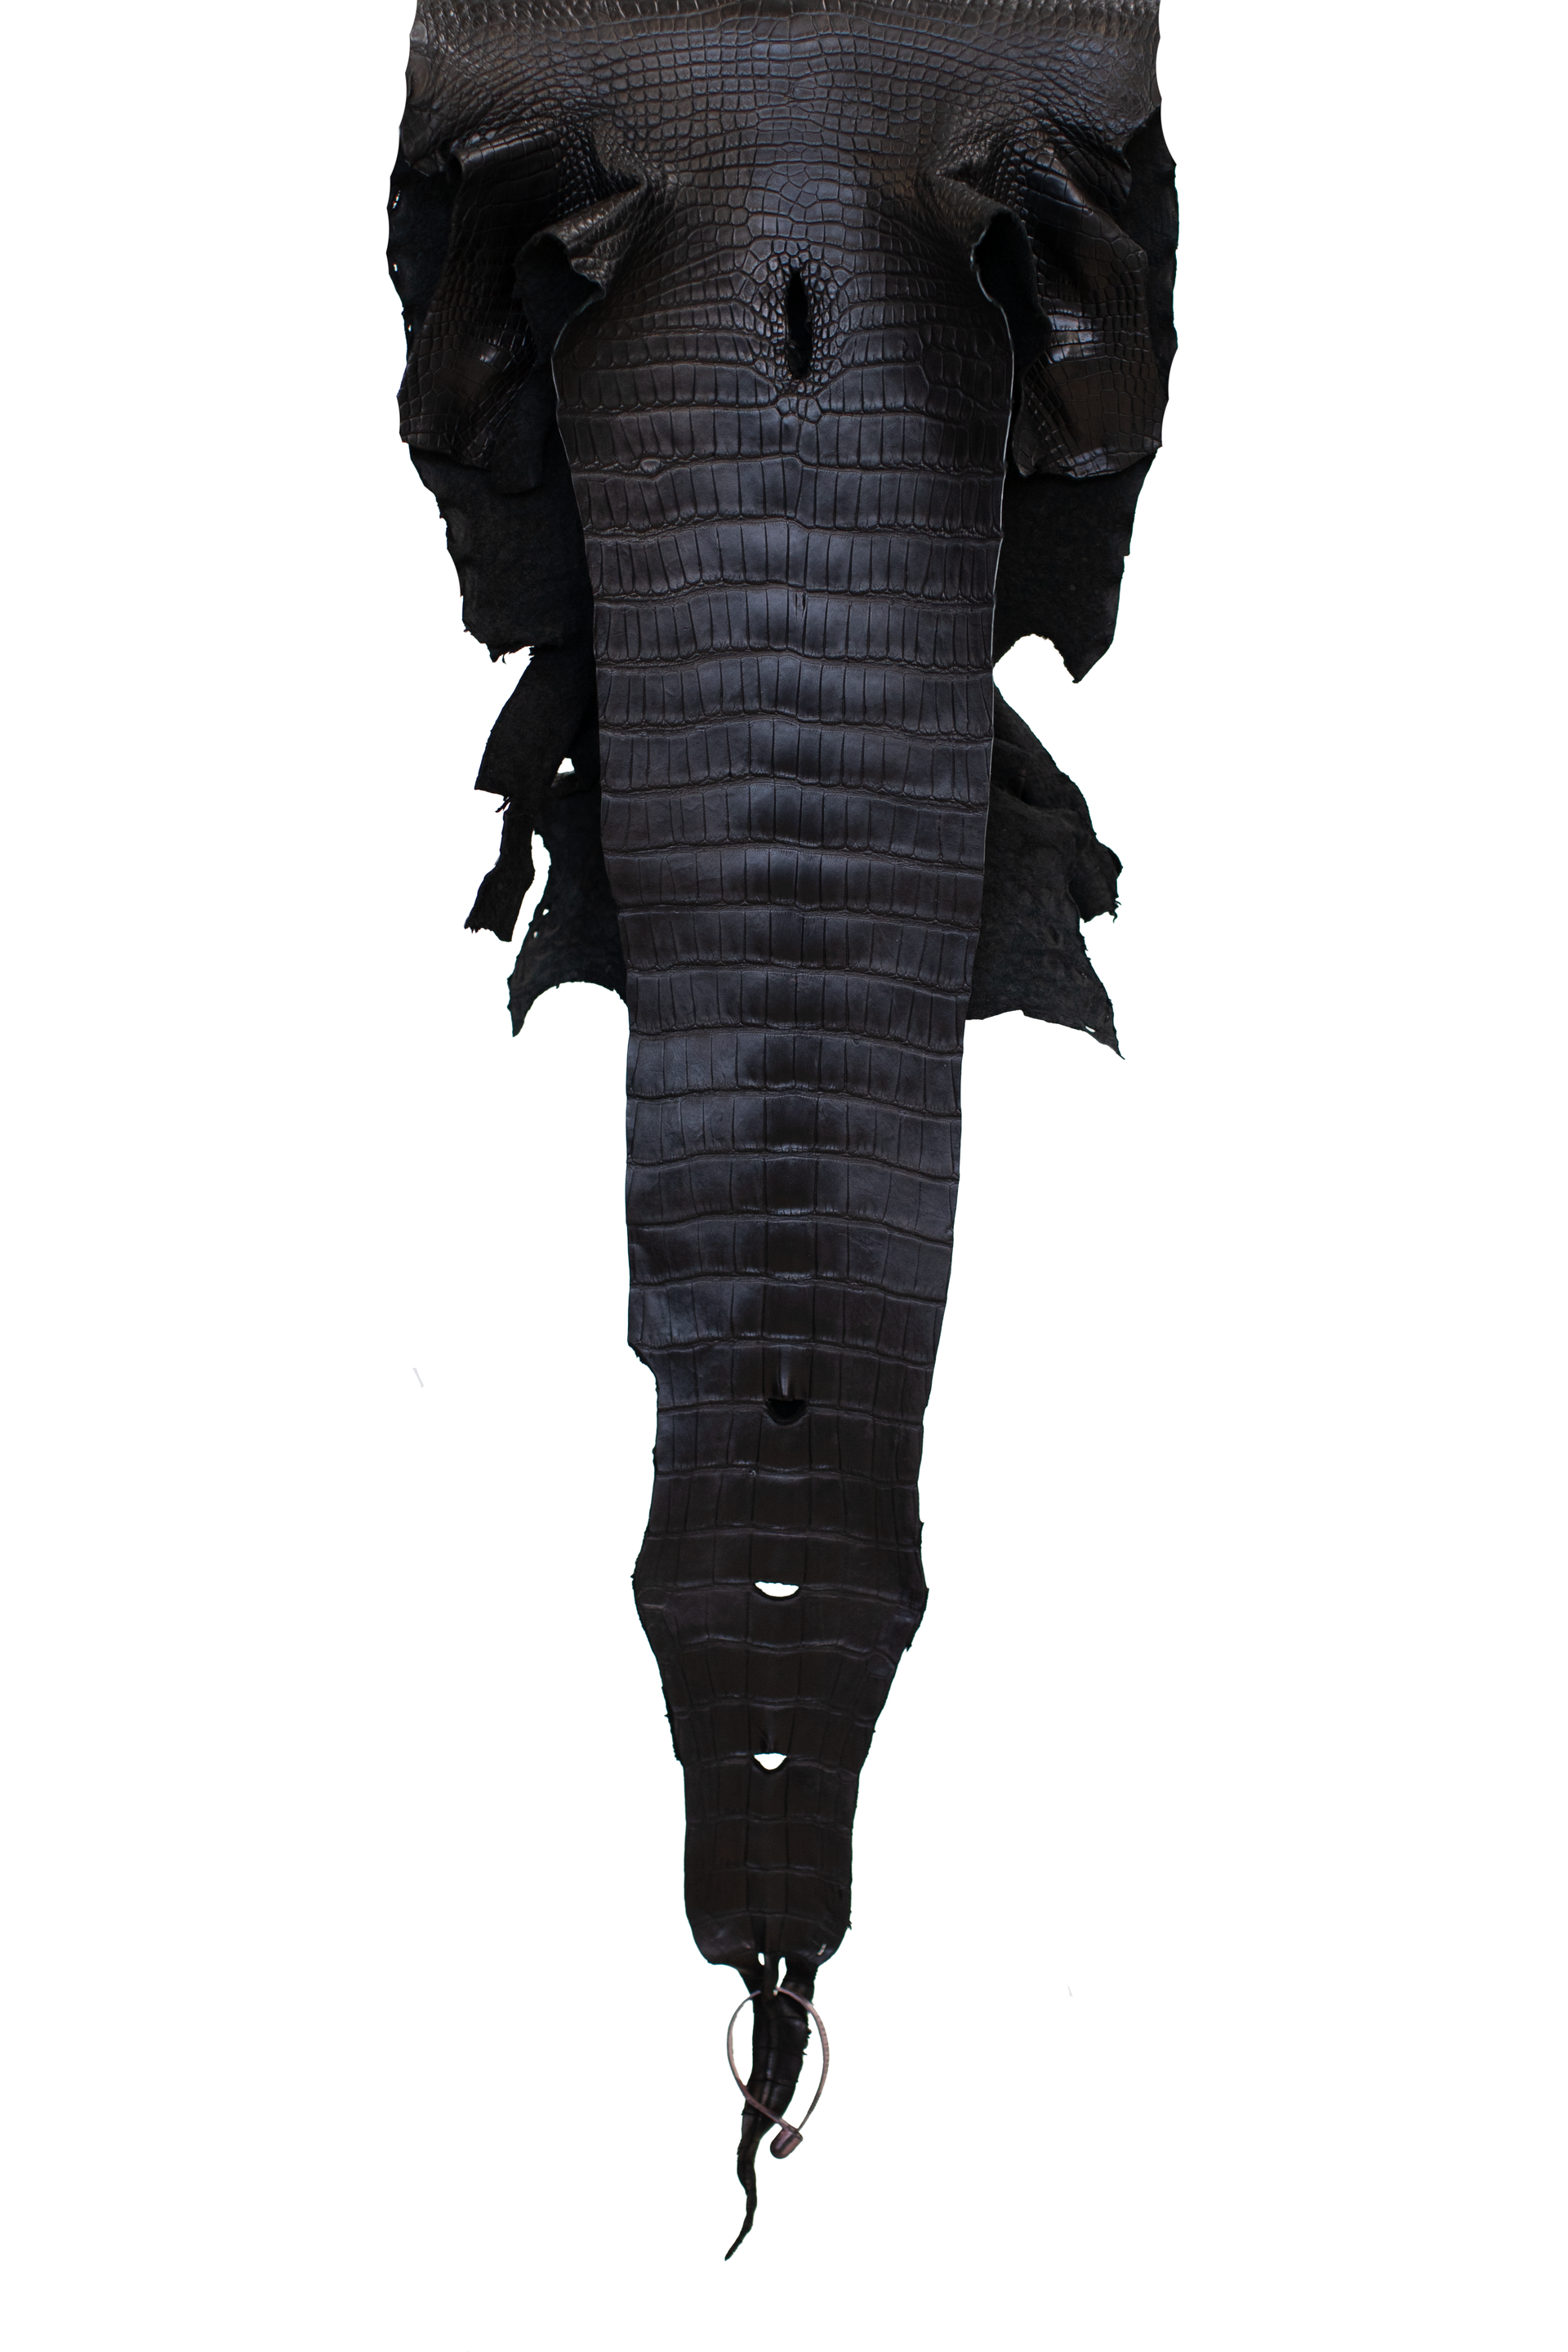 33 cm Grade 3/4 Black Matte Wild American Alligator Leather - Tag: LA21-0101460